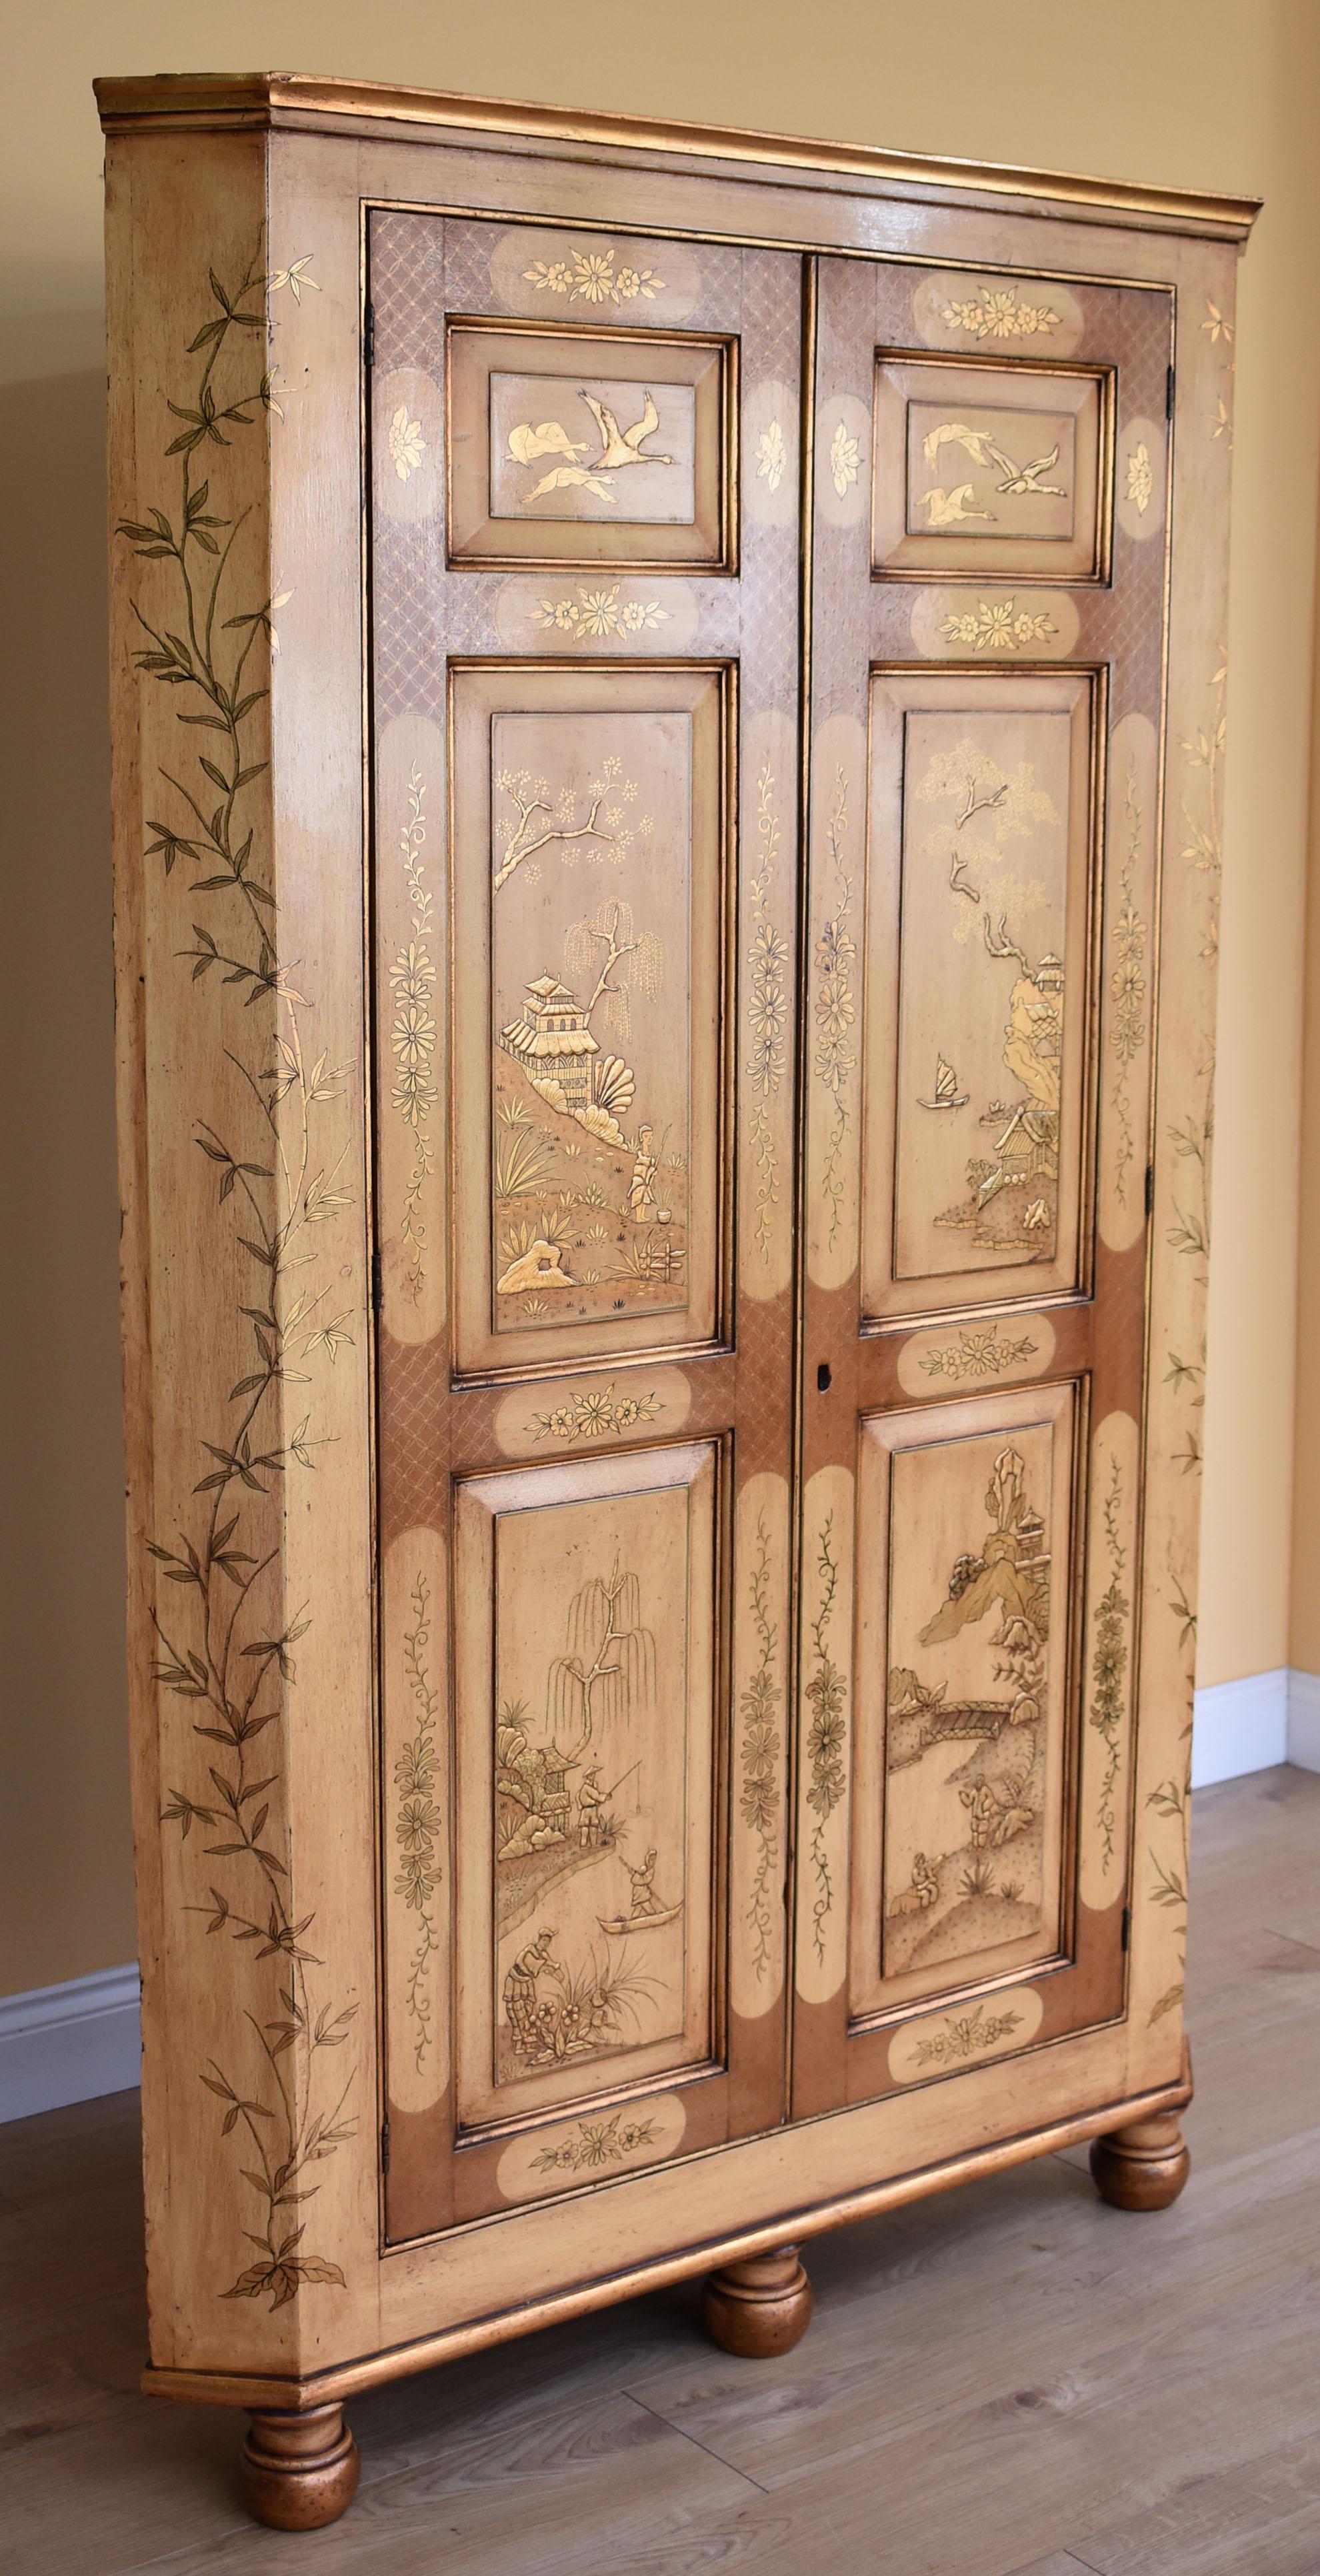 A vendre, une armoire d'angle de bonne qualité en acajou de George III, et plus tard en chinoiserie. La façade de l'armoire comporte deux portes, chacune avec trois panneaux. Chaque panneau est orné de chinoiseries représentant des scènes